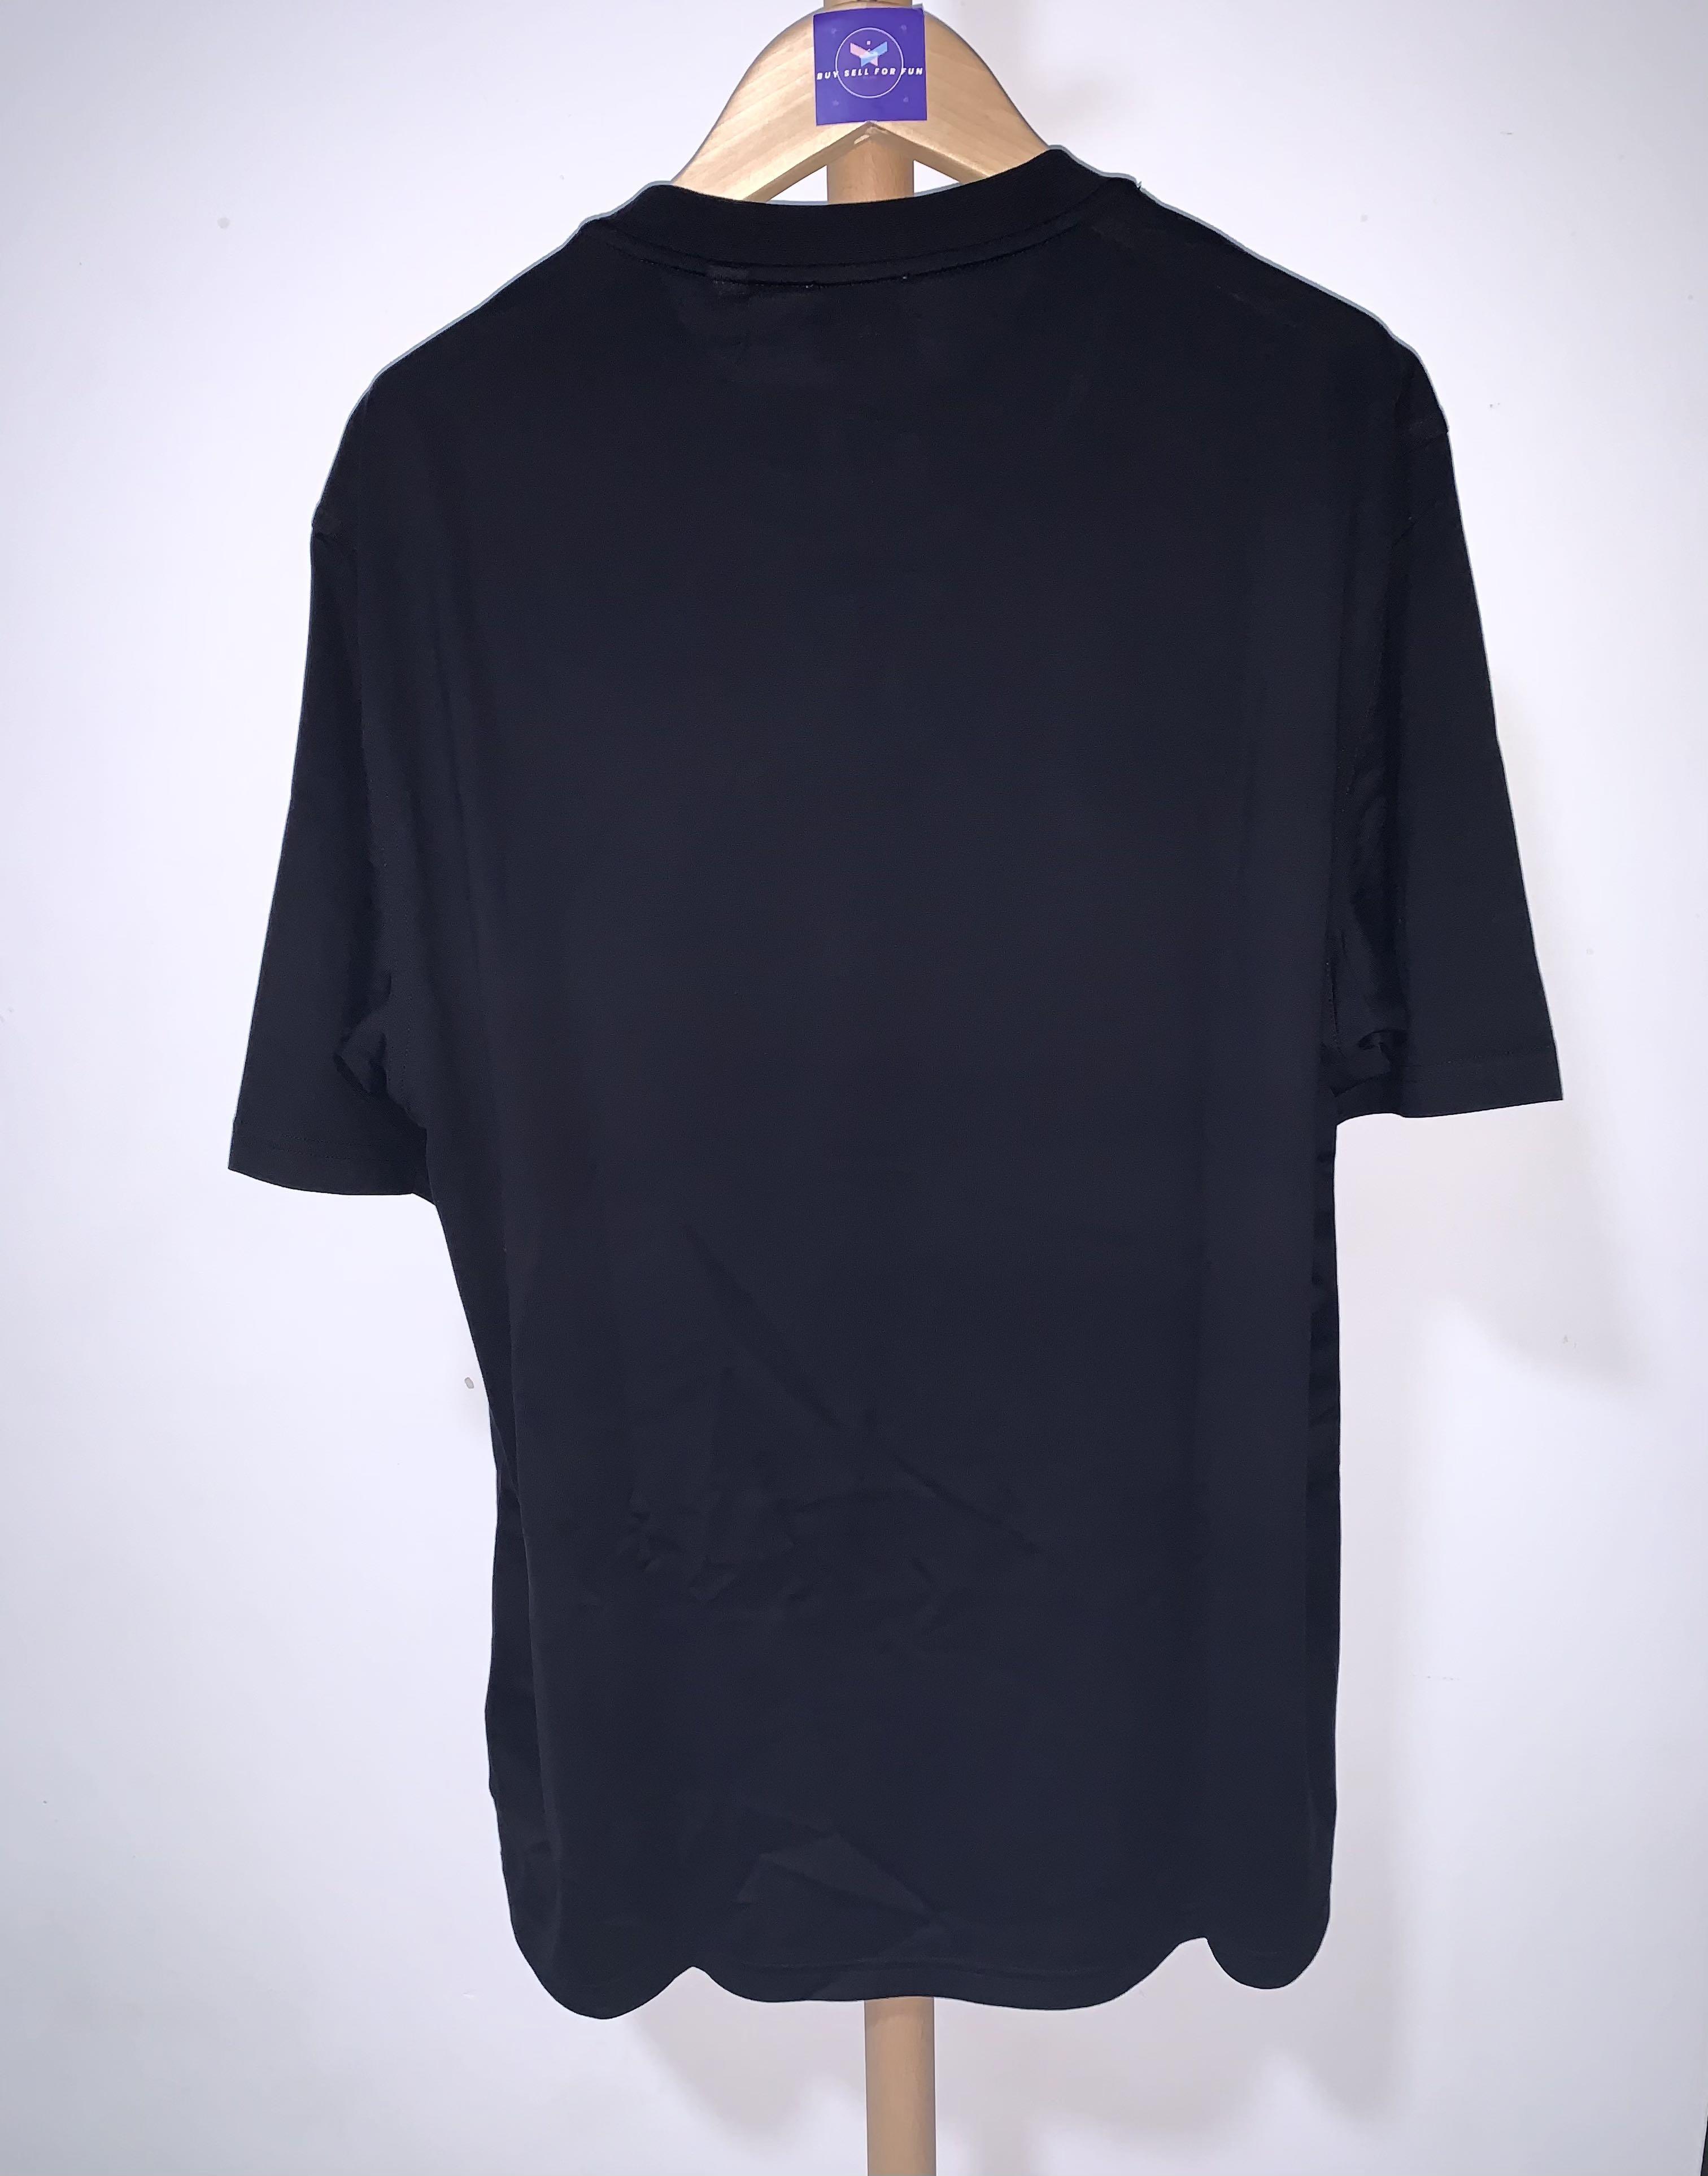 Burberry Ellison Logo Black Tee, Men's Fashion, Tops & Sets, Tshirts ...